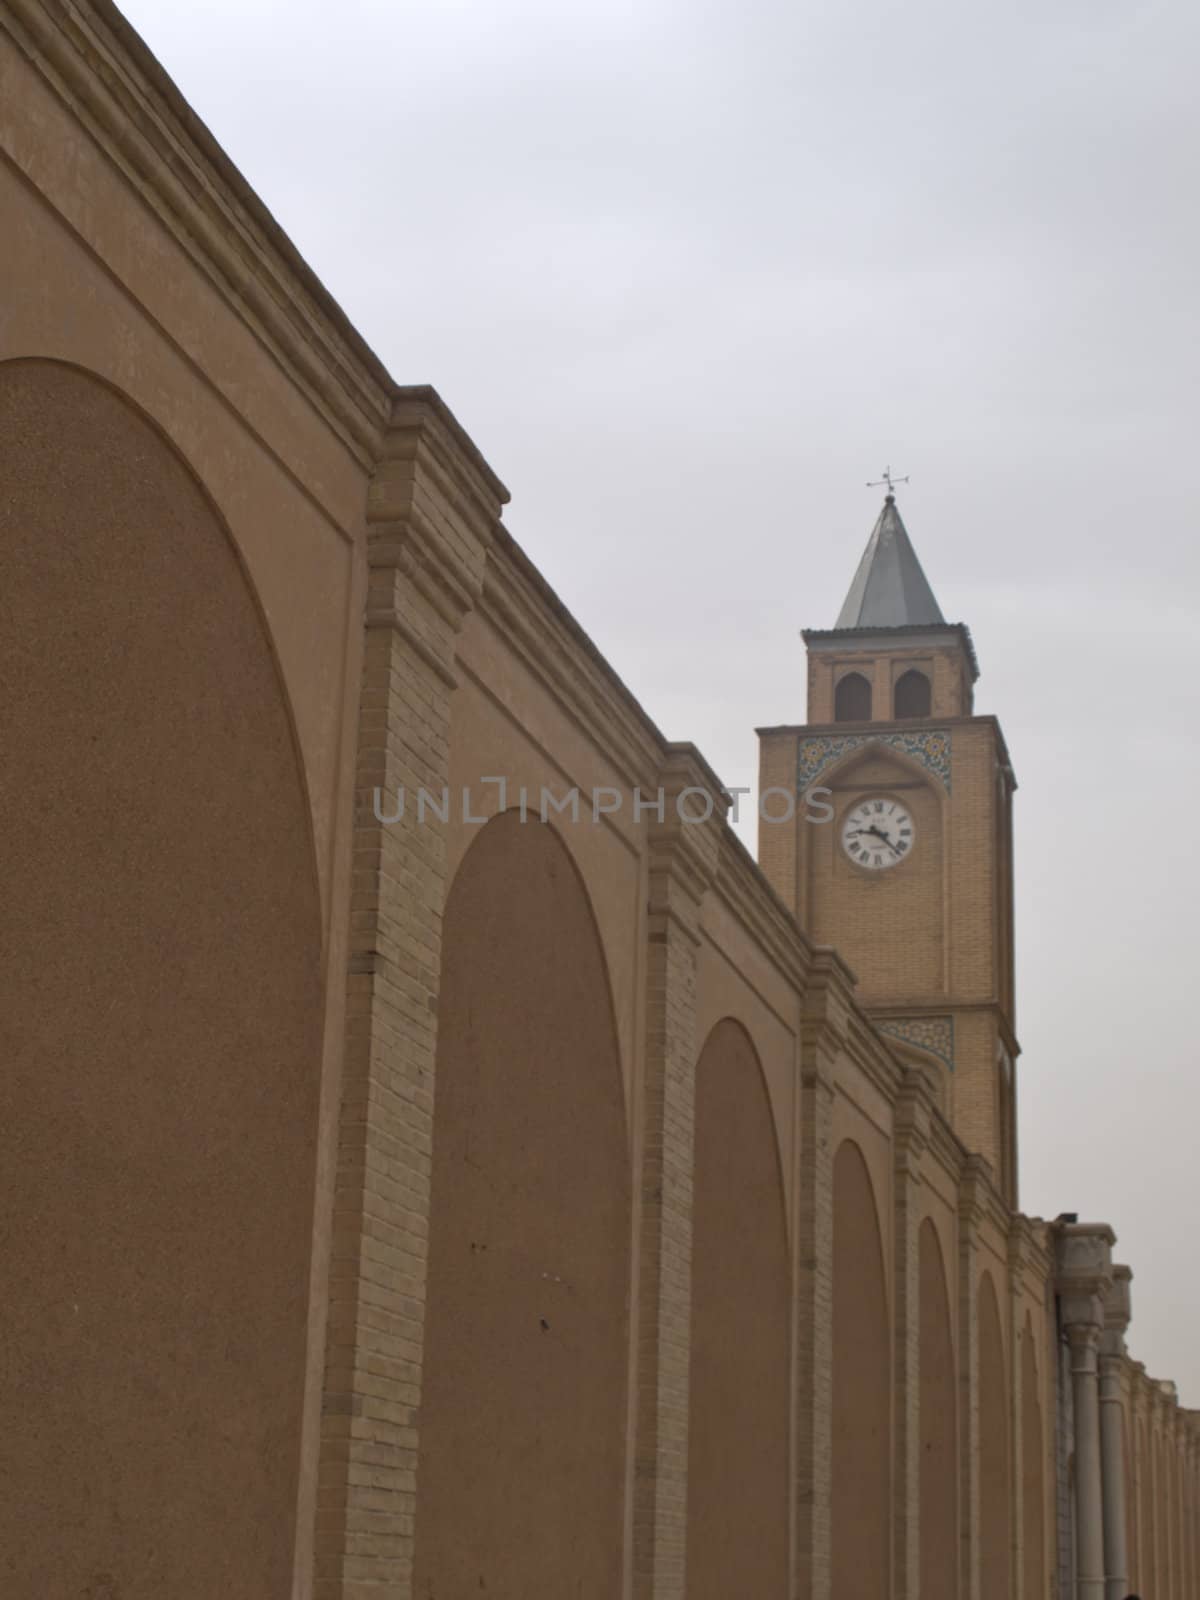 Vank Cathedral clock tower and brick wall in Isfahan Iran by gururugu